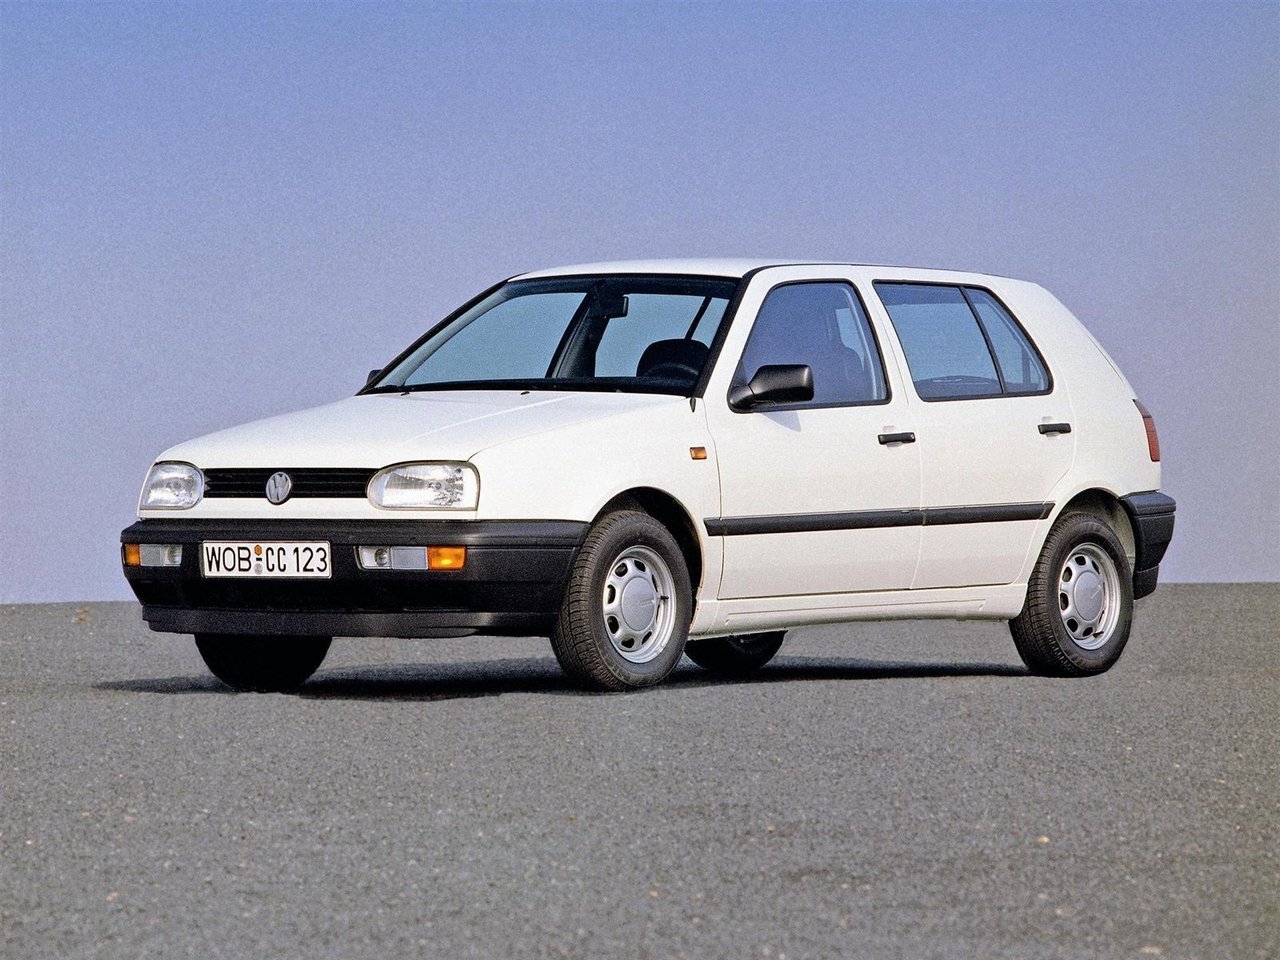 Расход газа одинадцати комплектаций хэтчбека пять дверей Volkswagen Golf. Разница стоимости заправки газом и бензином. Автономный пробег до и после установки ГБО.